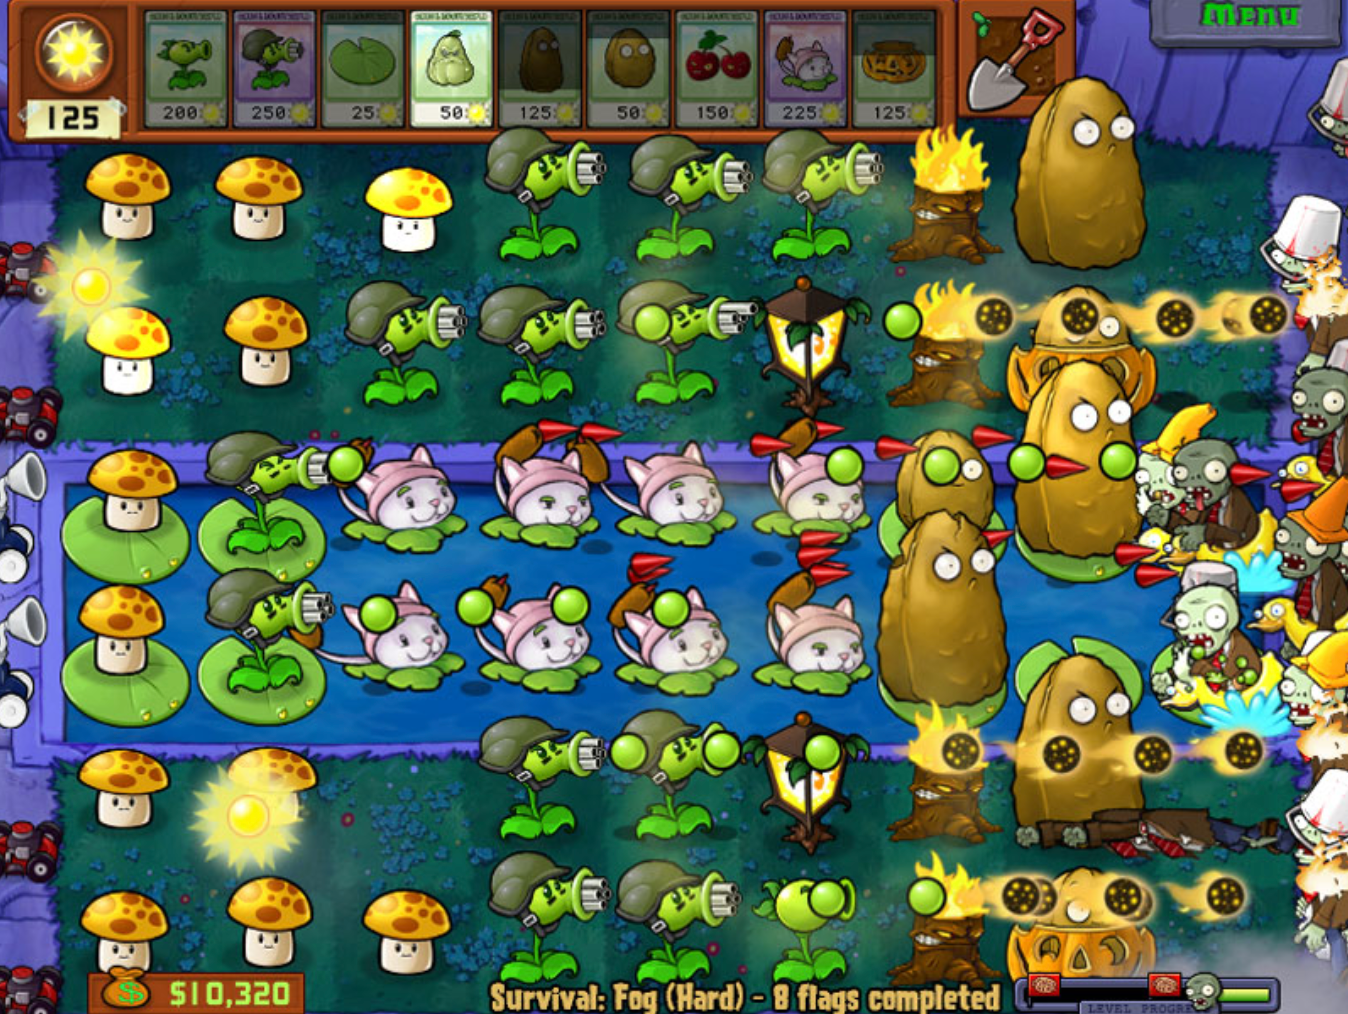 plant vs zombies game popcap